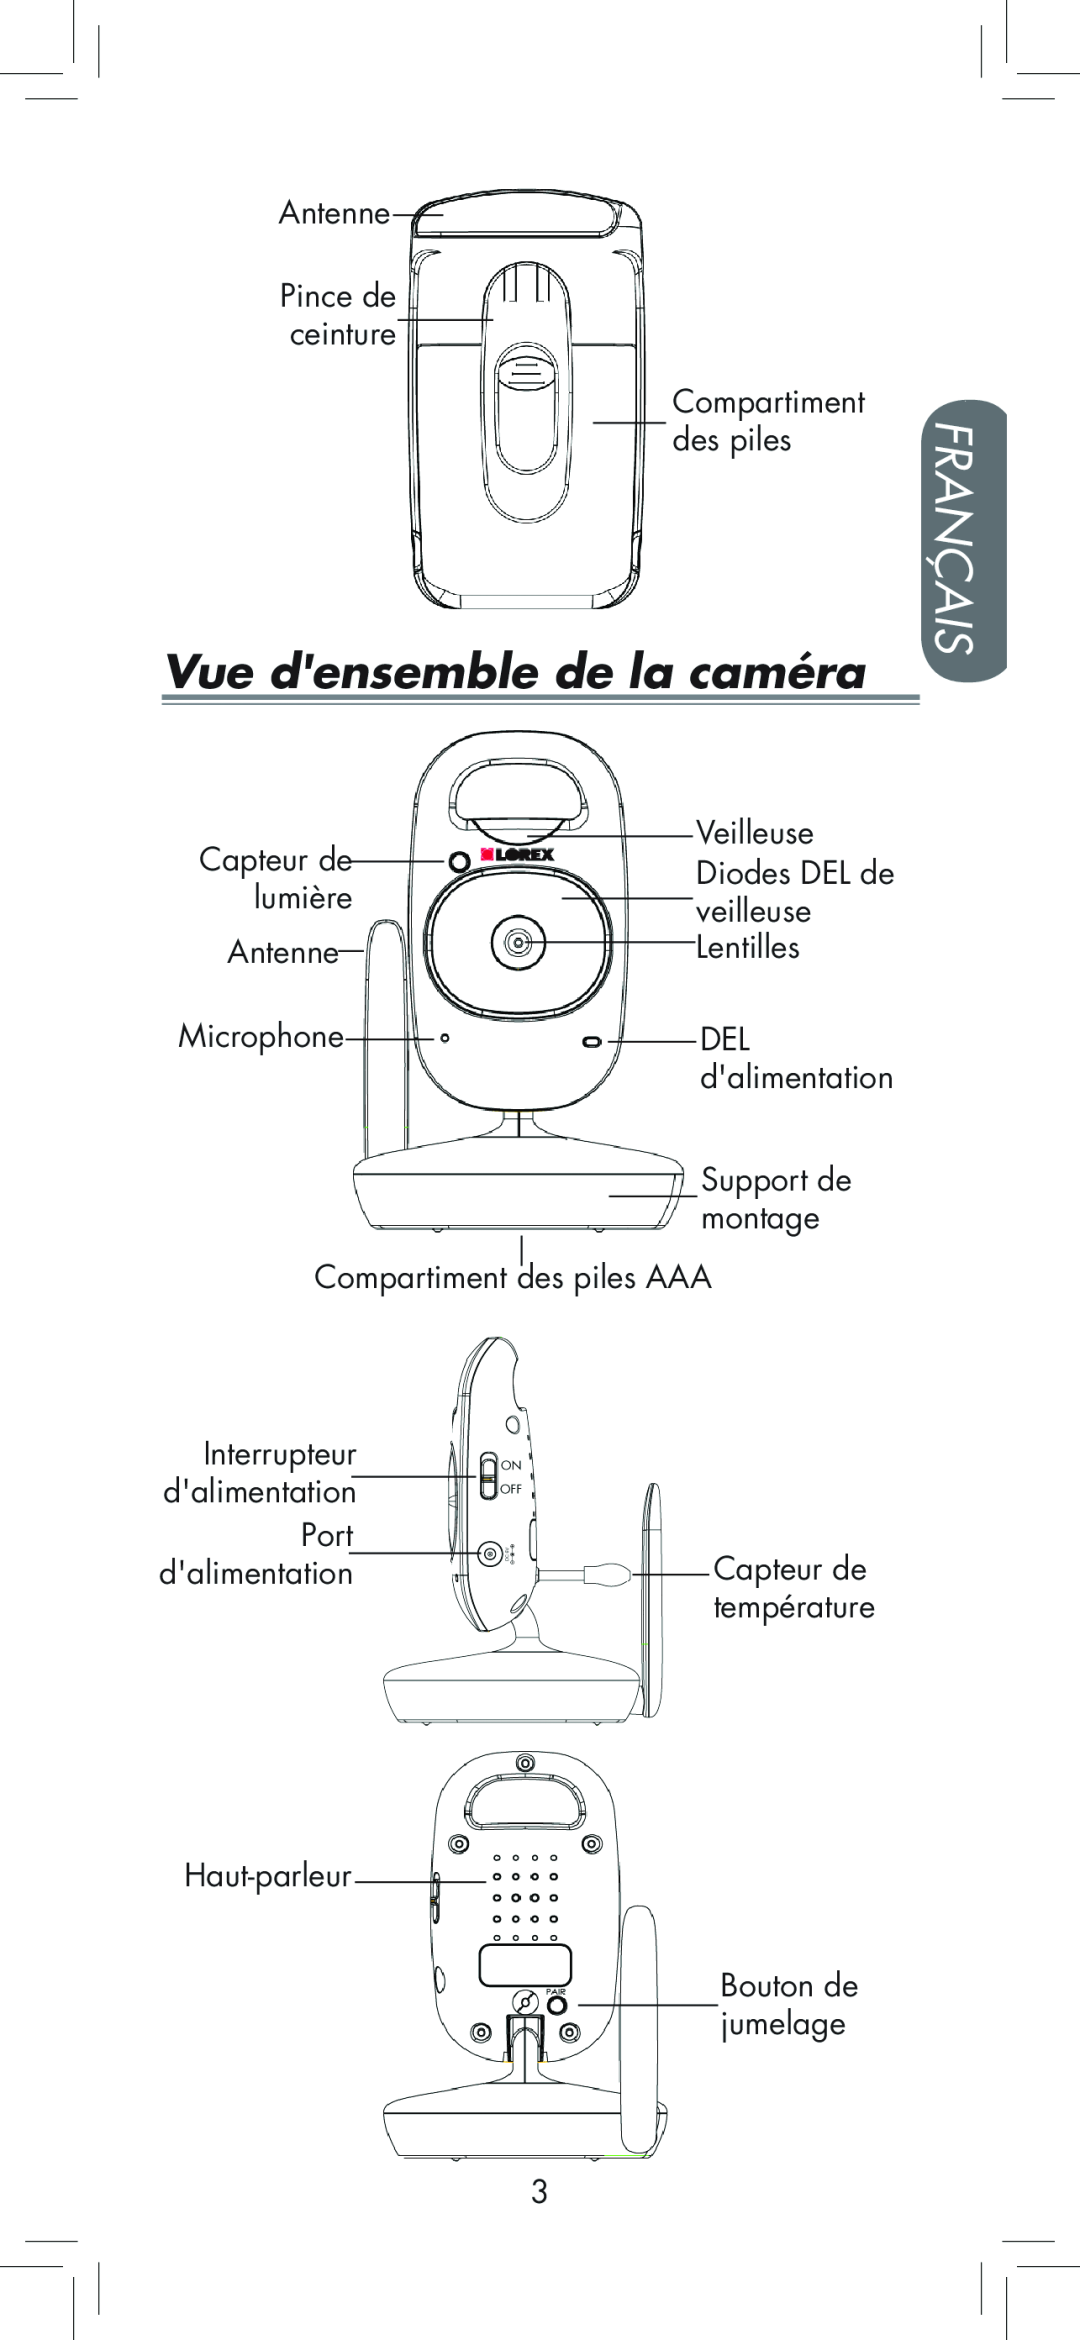 LOREX Technology BB2411 manual Vue densemble de la caméra, Français 